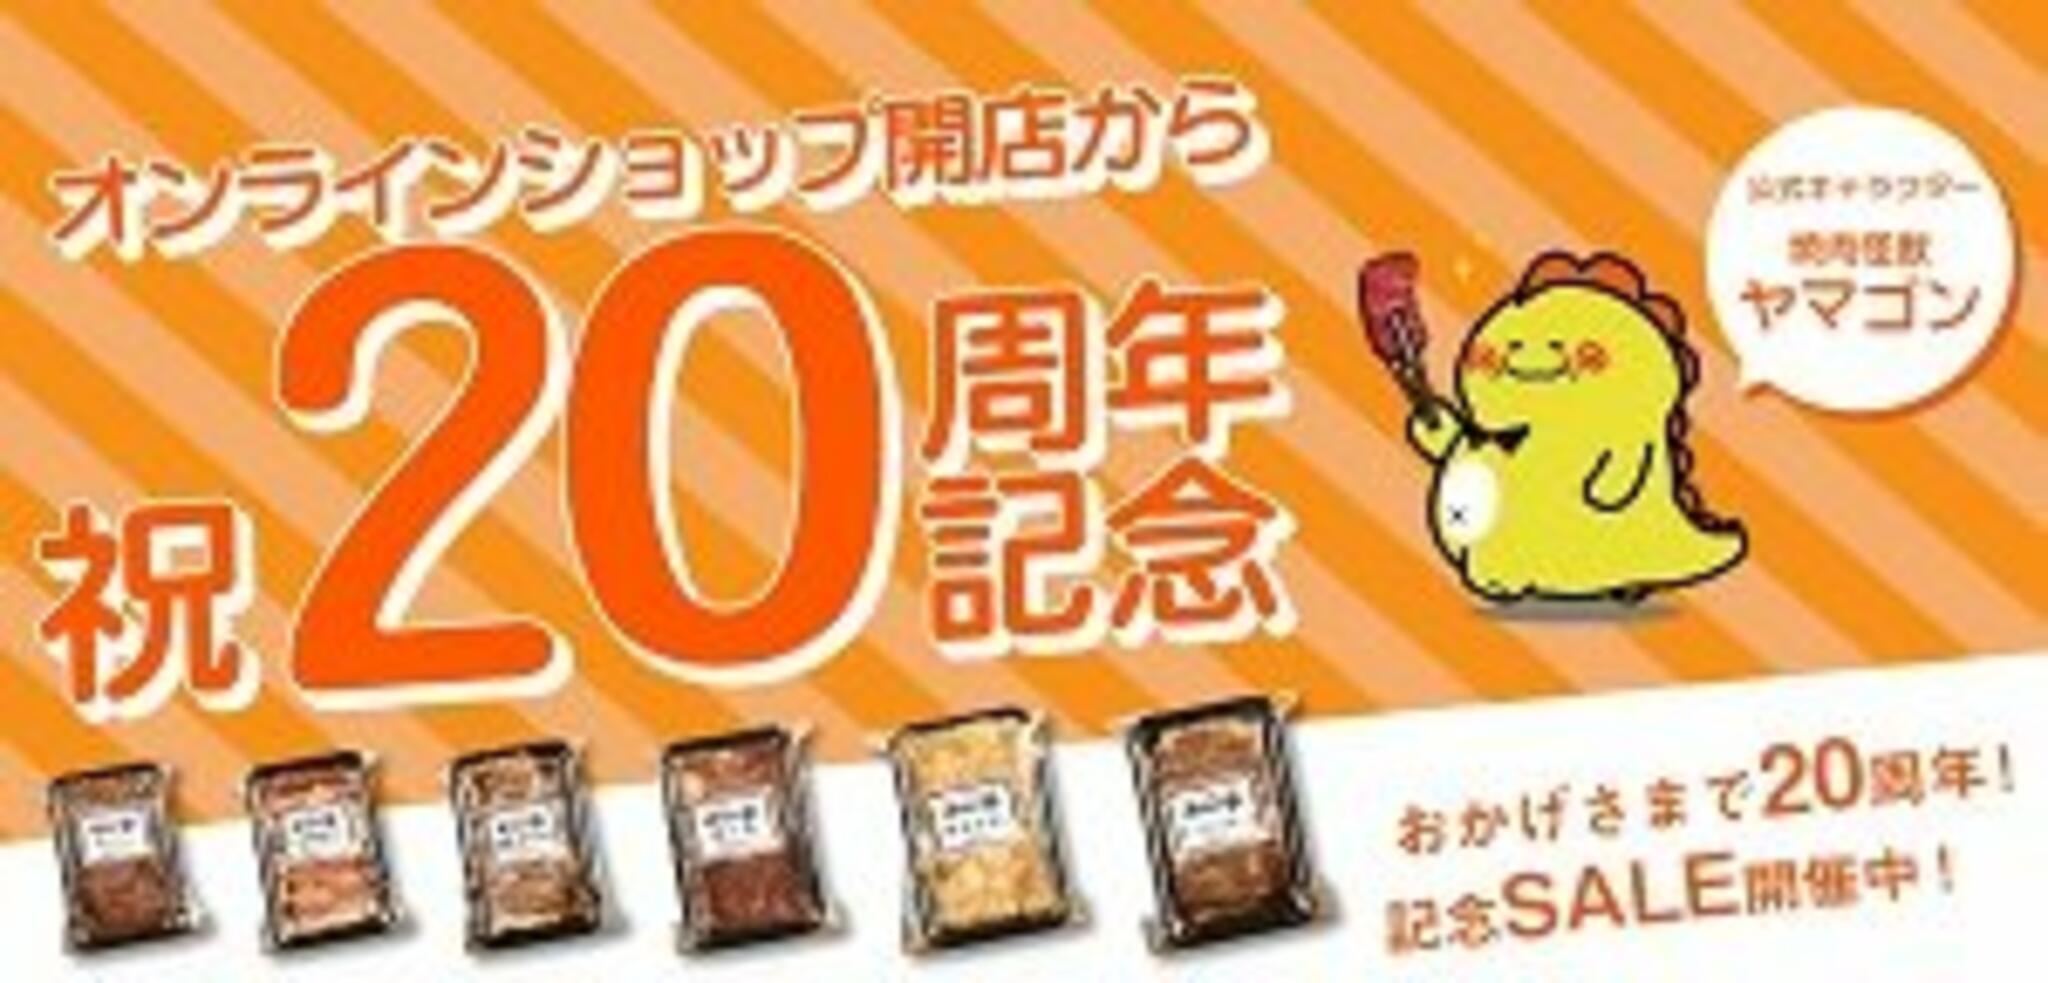 焼肉冷麺やまなか家 上田バイパス店からのお知らせ(やまなか家オンラインショップ20周年記念SALE開催中です！)に関する写真